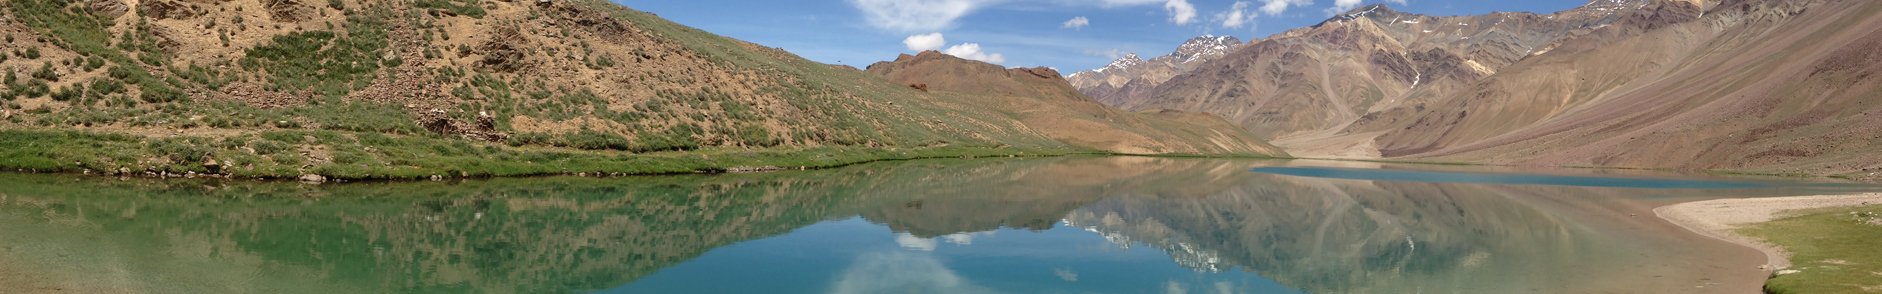 Manimahesh Lake Himachal Pradesh